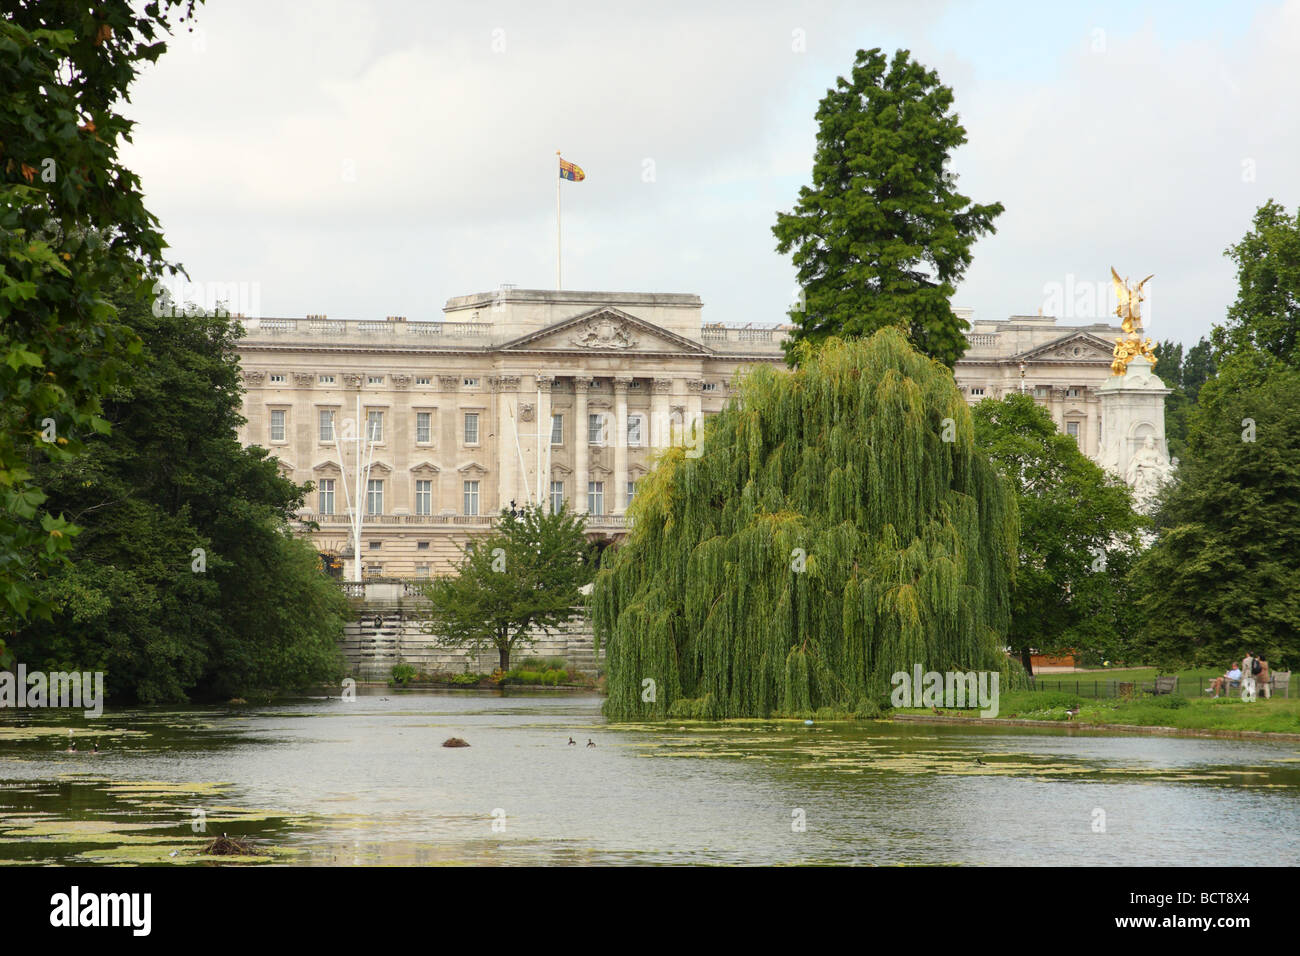 St James Park et Buckingham Palace, Londres. Avec flag flying pour signifier le monarque est en résidence. Banque D'Images